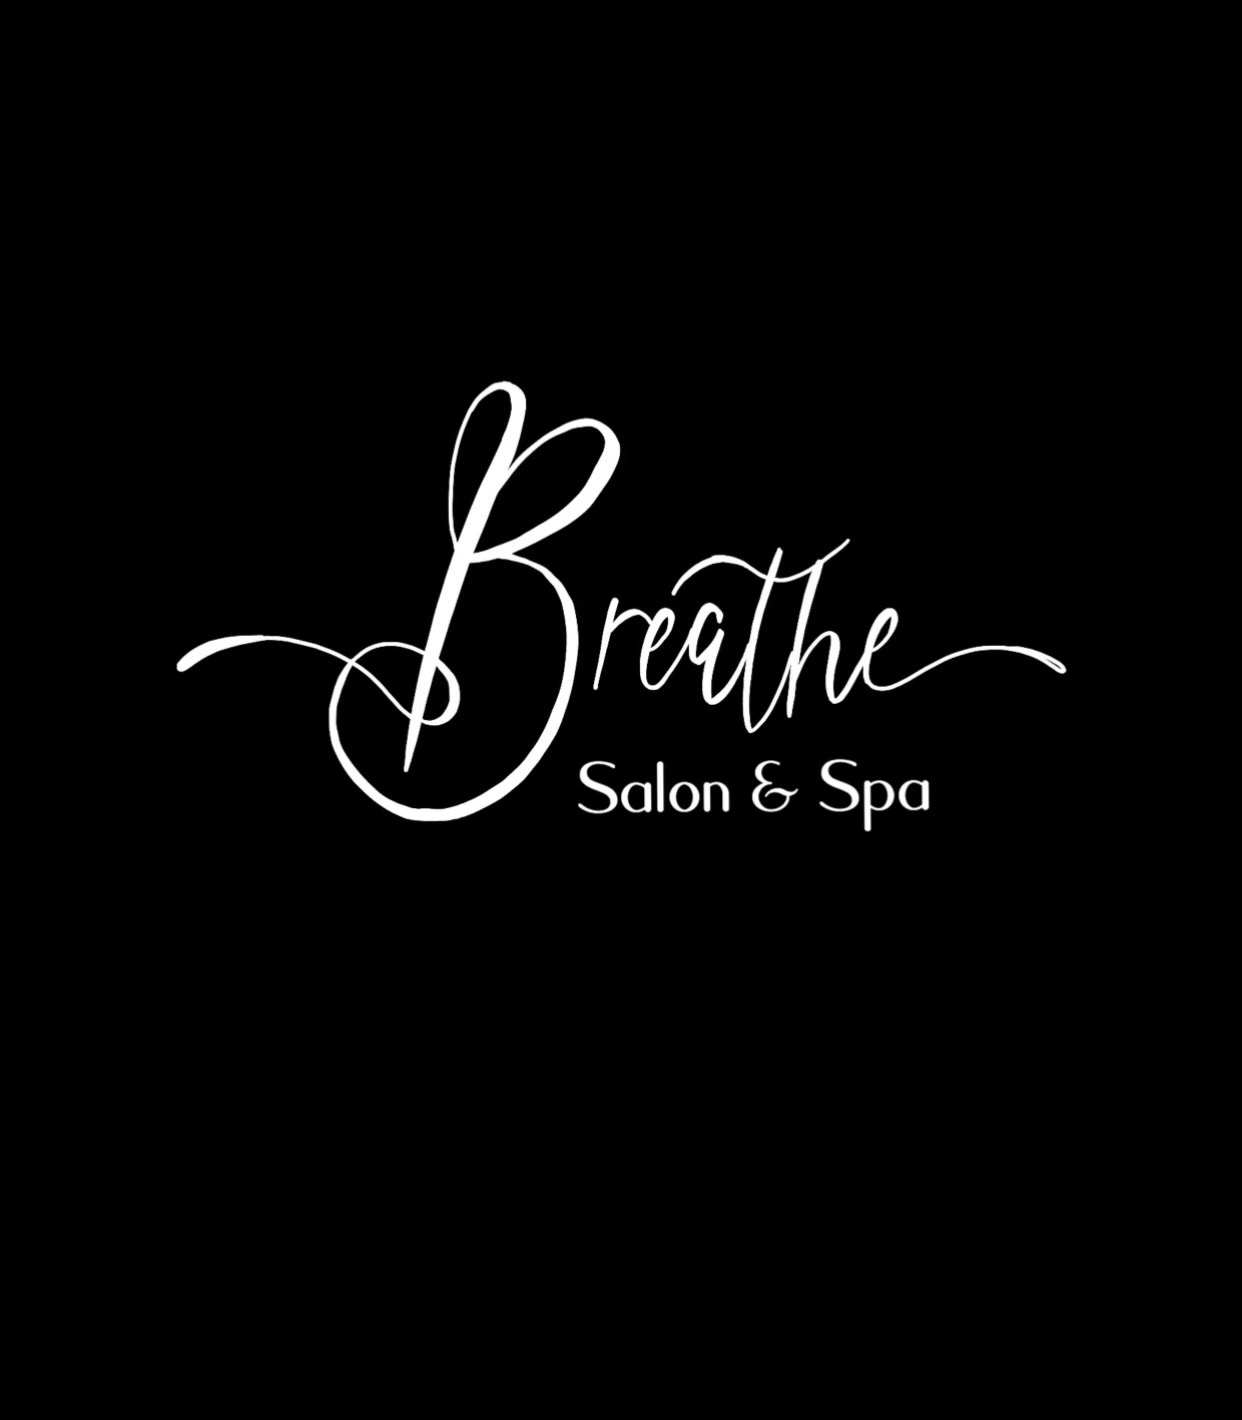 Breathe Salon and Spa